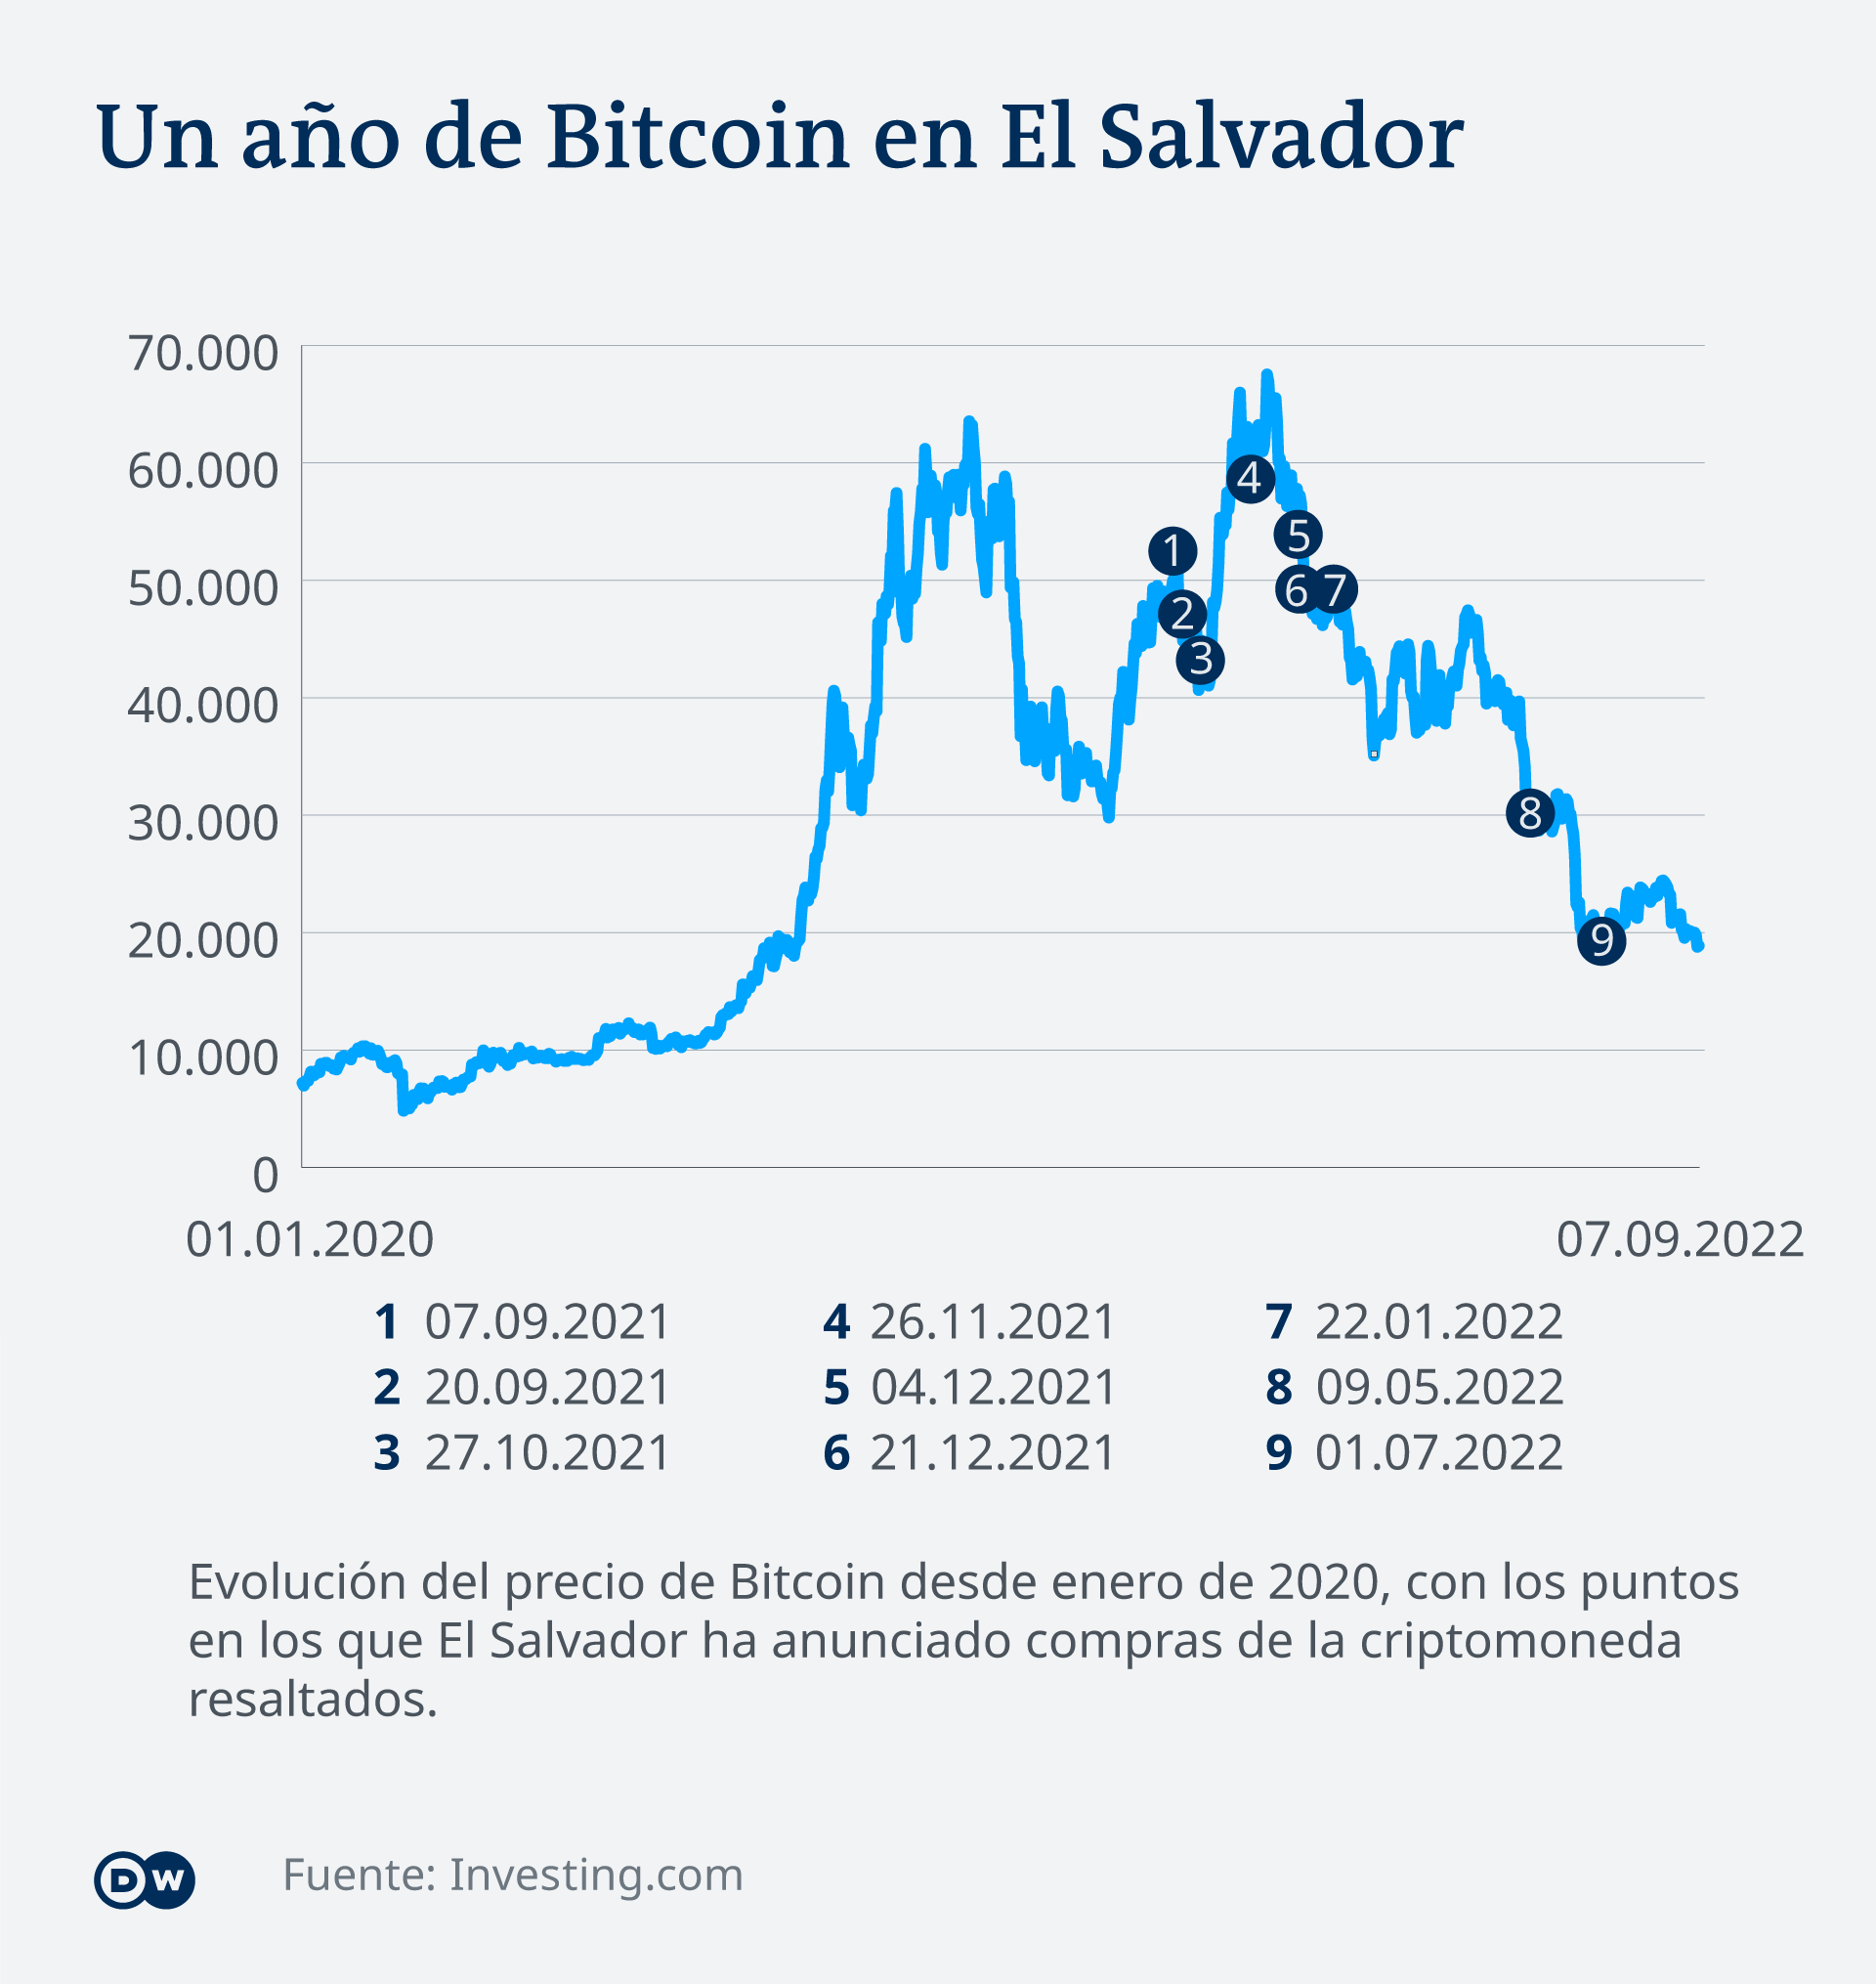 how many bitcoins does el salvador own